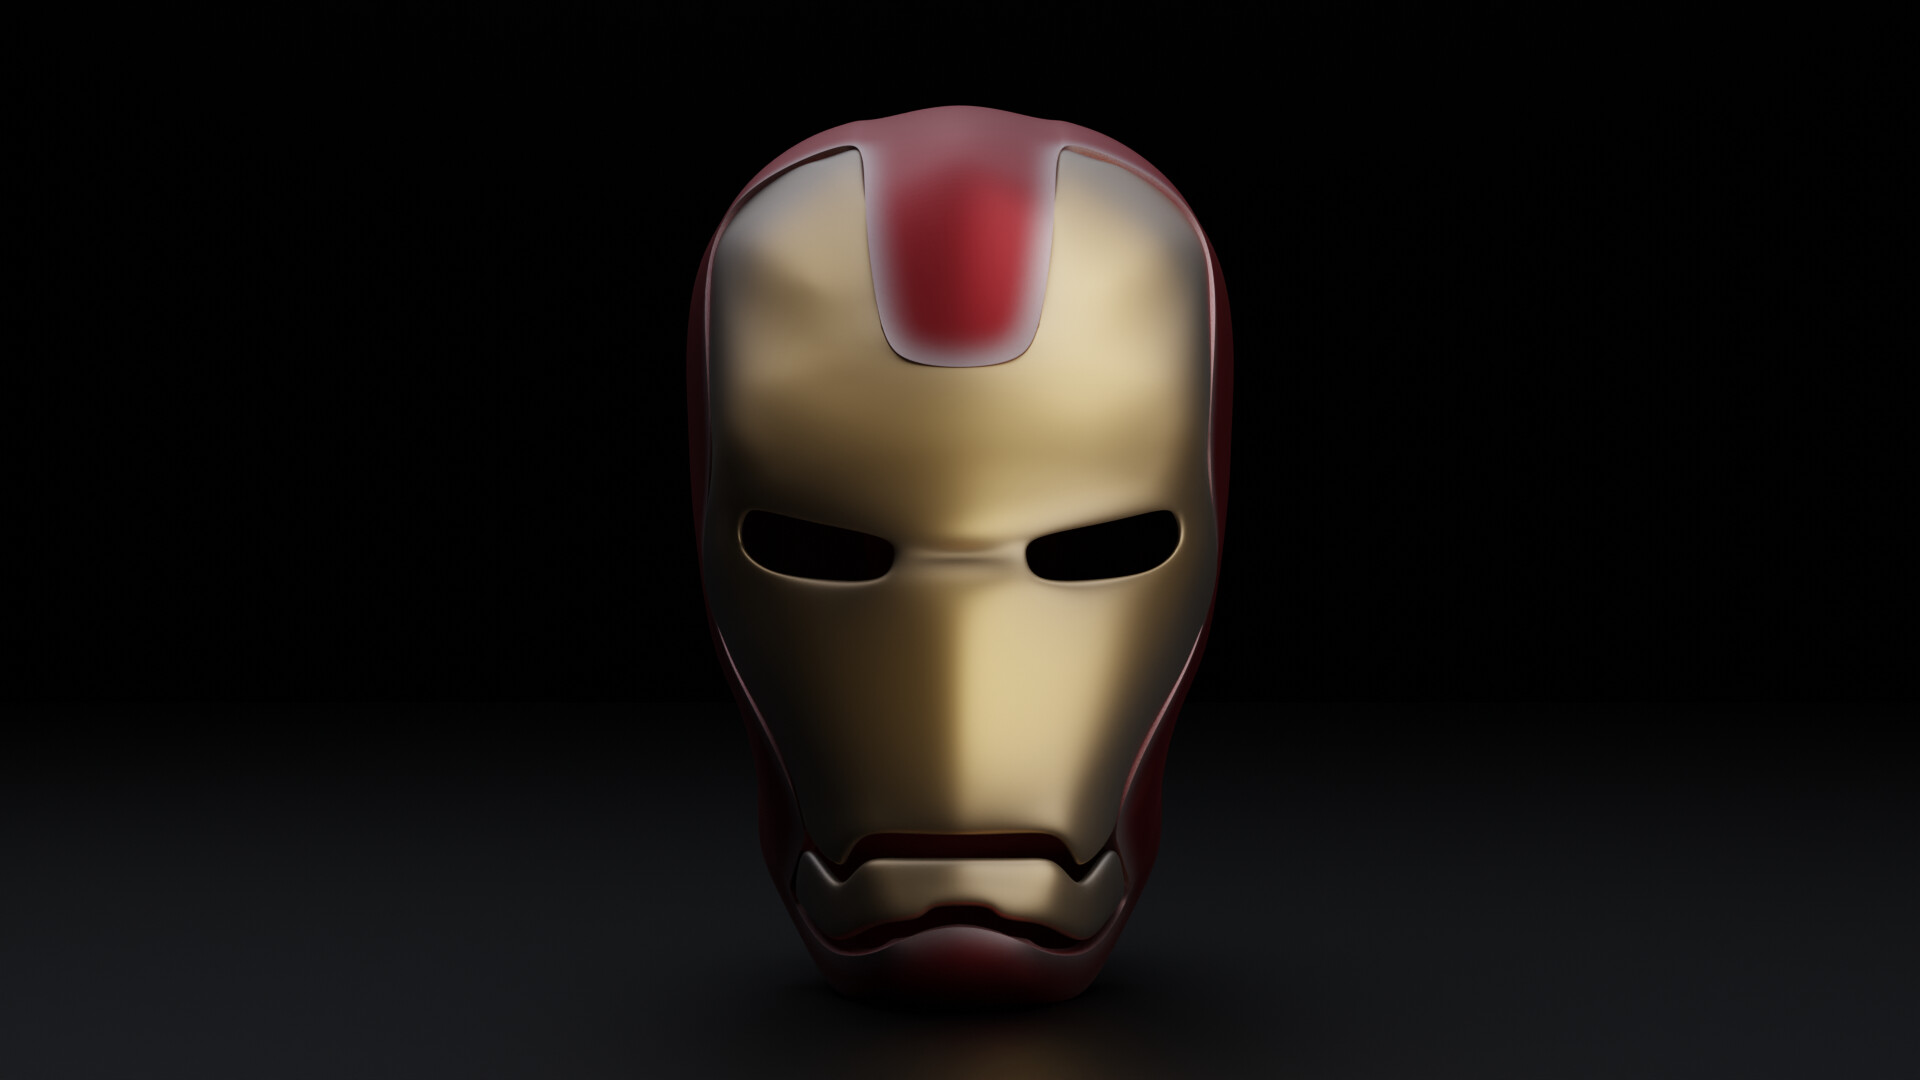 ArtStation - Iron Man helmet